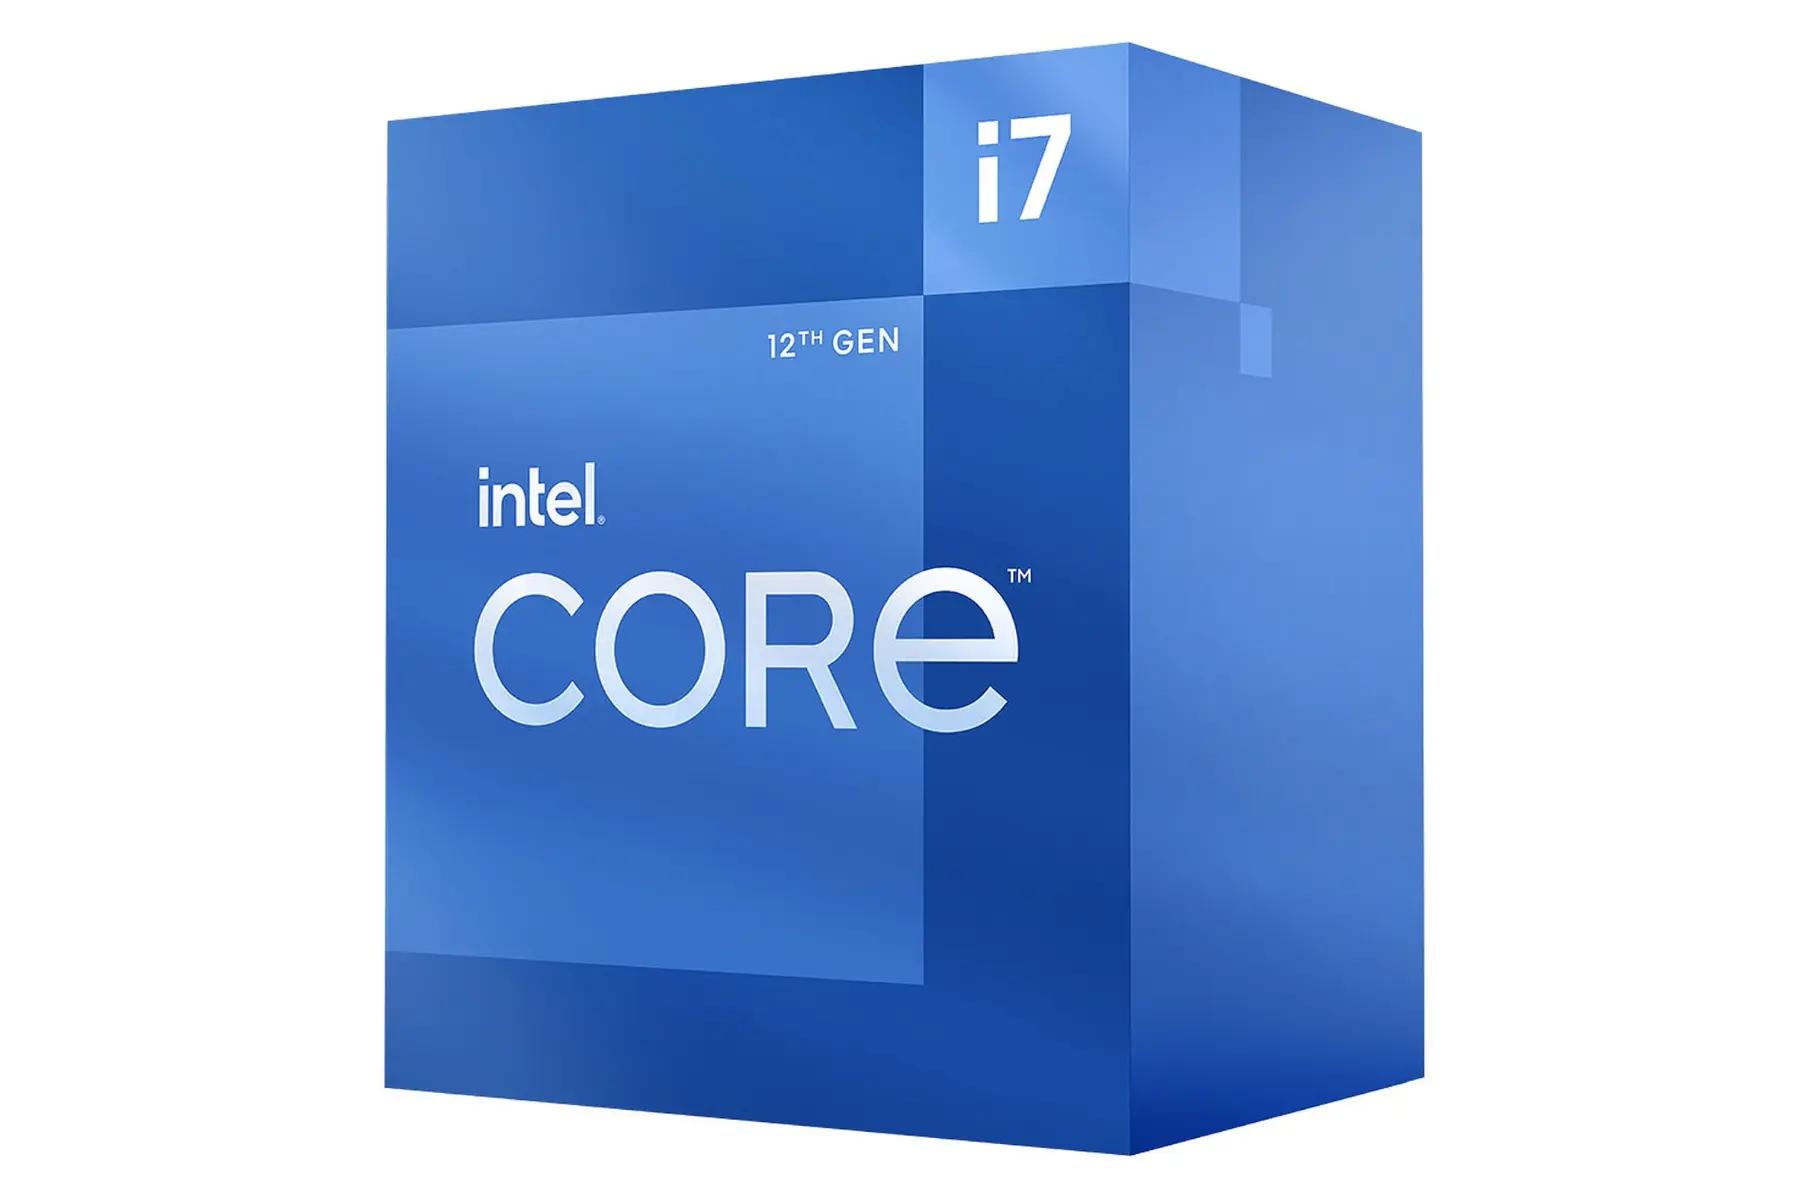 Intel Core i7 13700K Tray